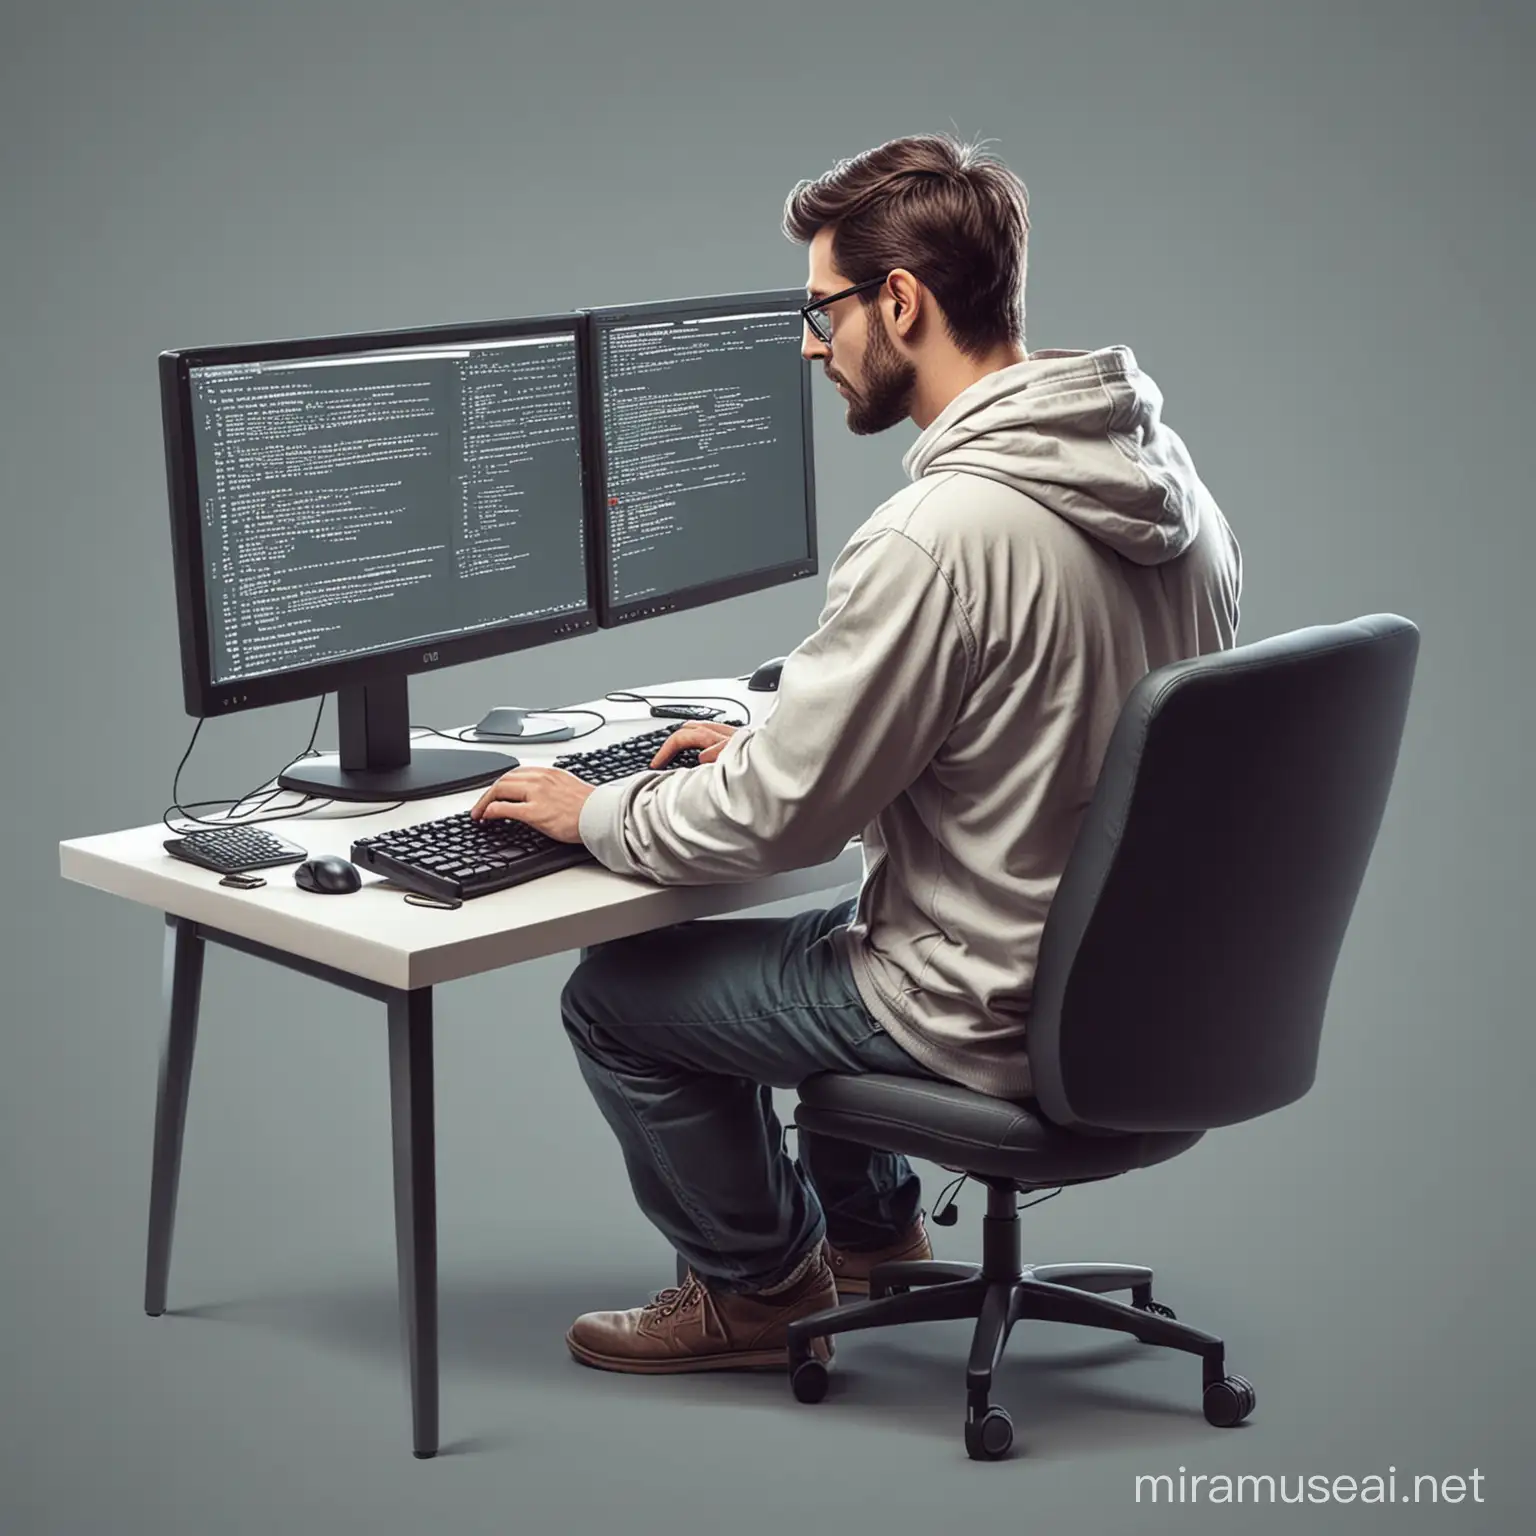 Программист за компьютером: Иллюстрация программиста, сидящего за компьютером с клавиатурой и монитором, пишущего код.